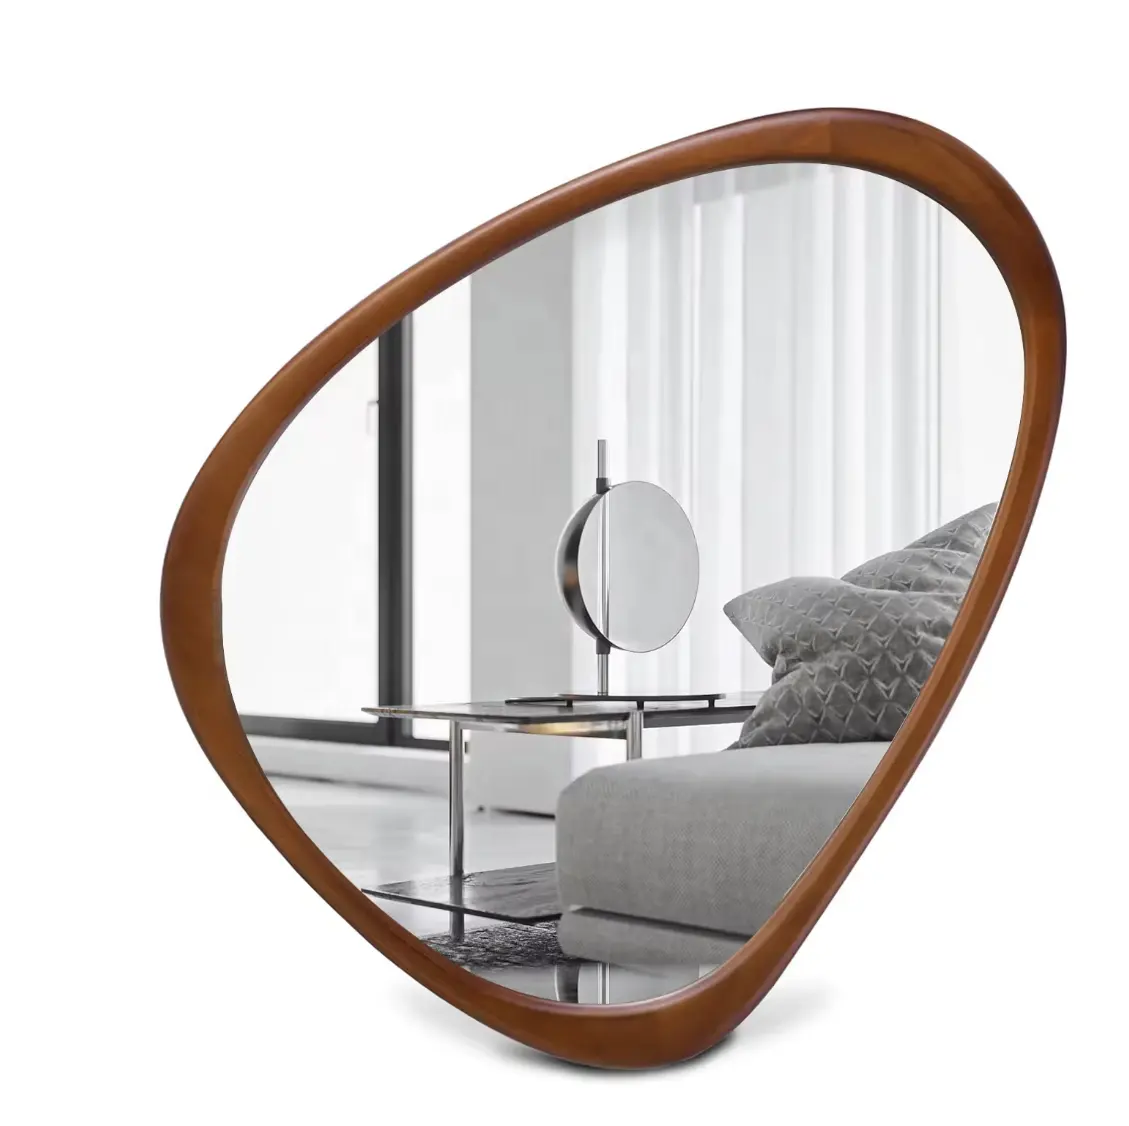 Зеркало настенное асимметричное с деревянной рамкой для гостиной, спальни, прихожей, ванной комнаты, домашнего декора, настенное зеркало